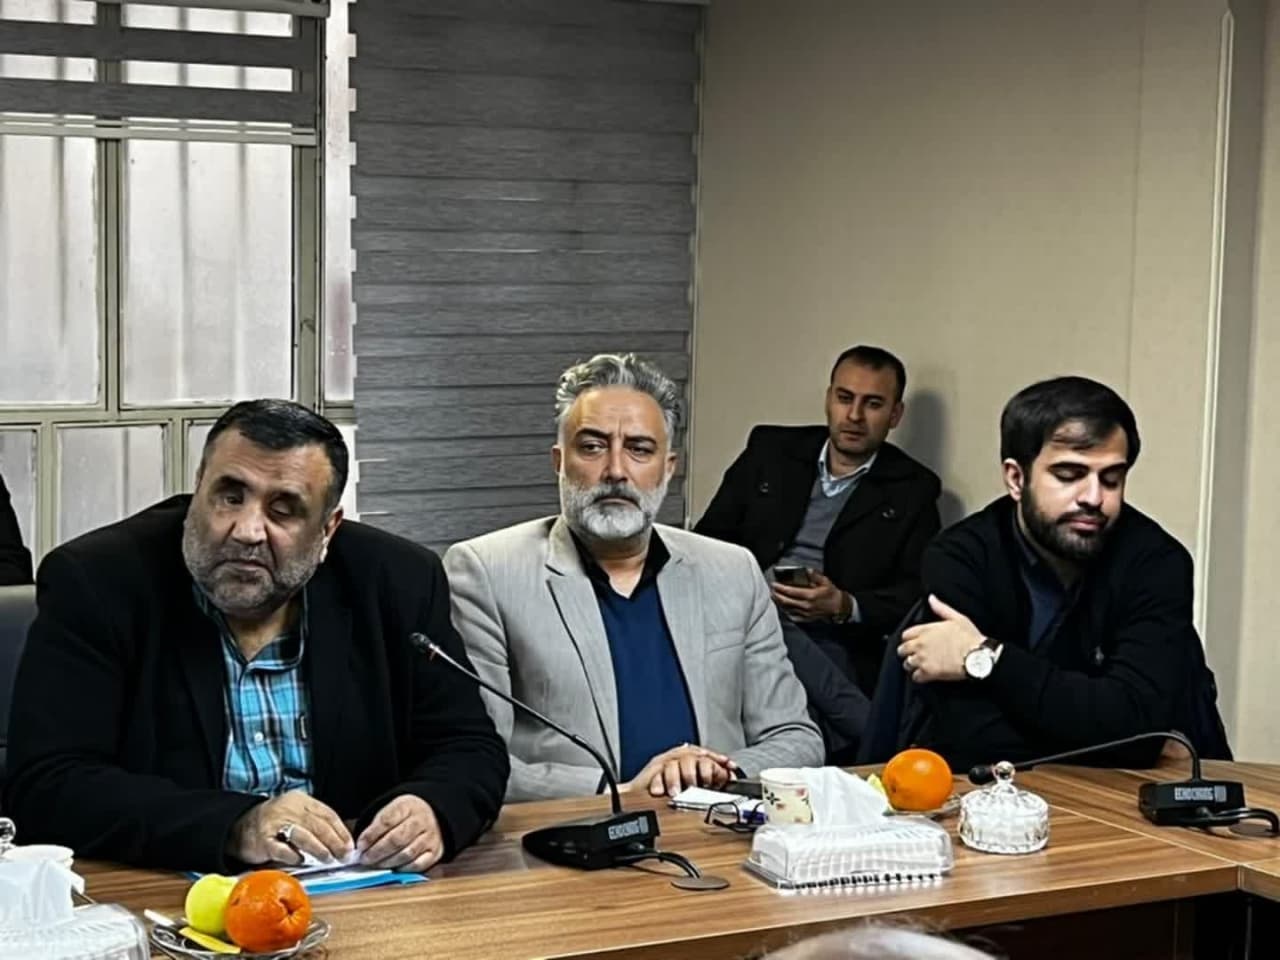 نشست شورای ائتلاف تهران با موضوع بررسی نامزدهای فیروزکوه و دماوند